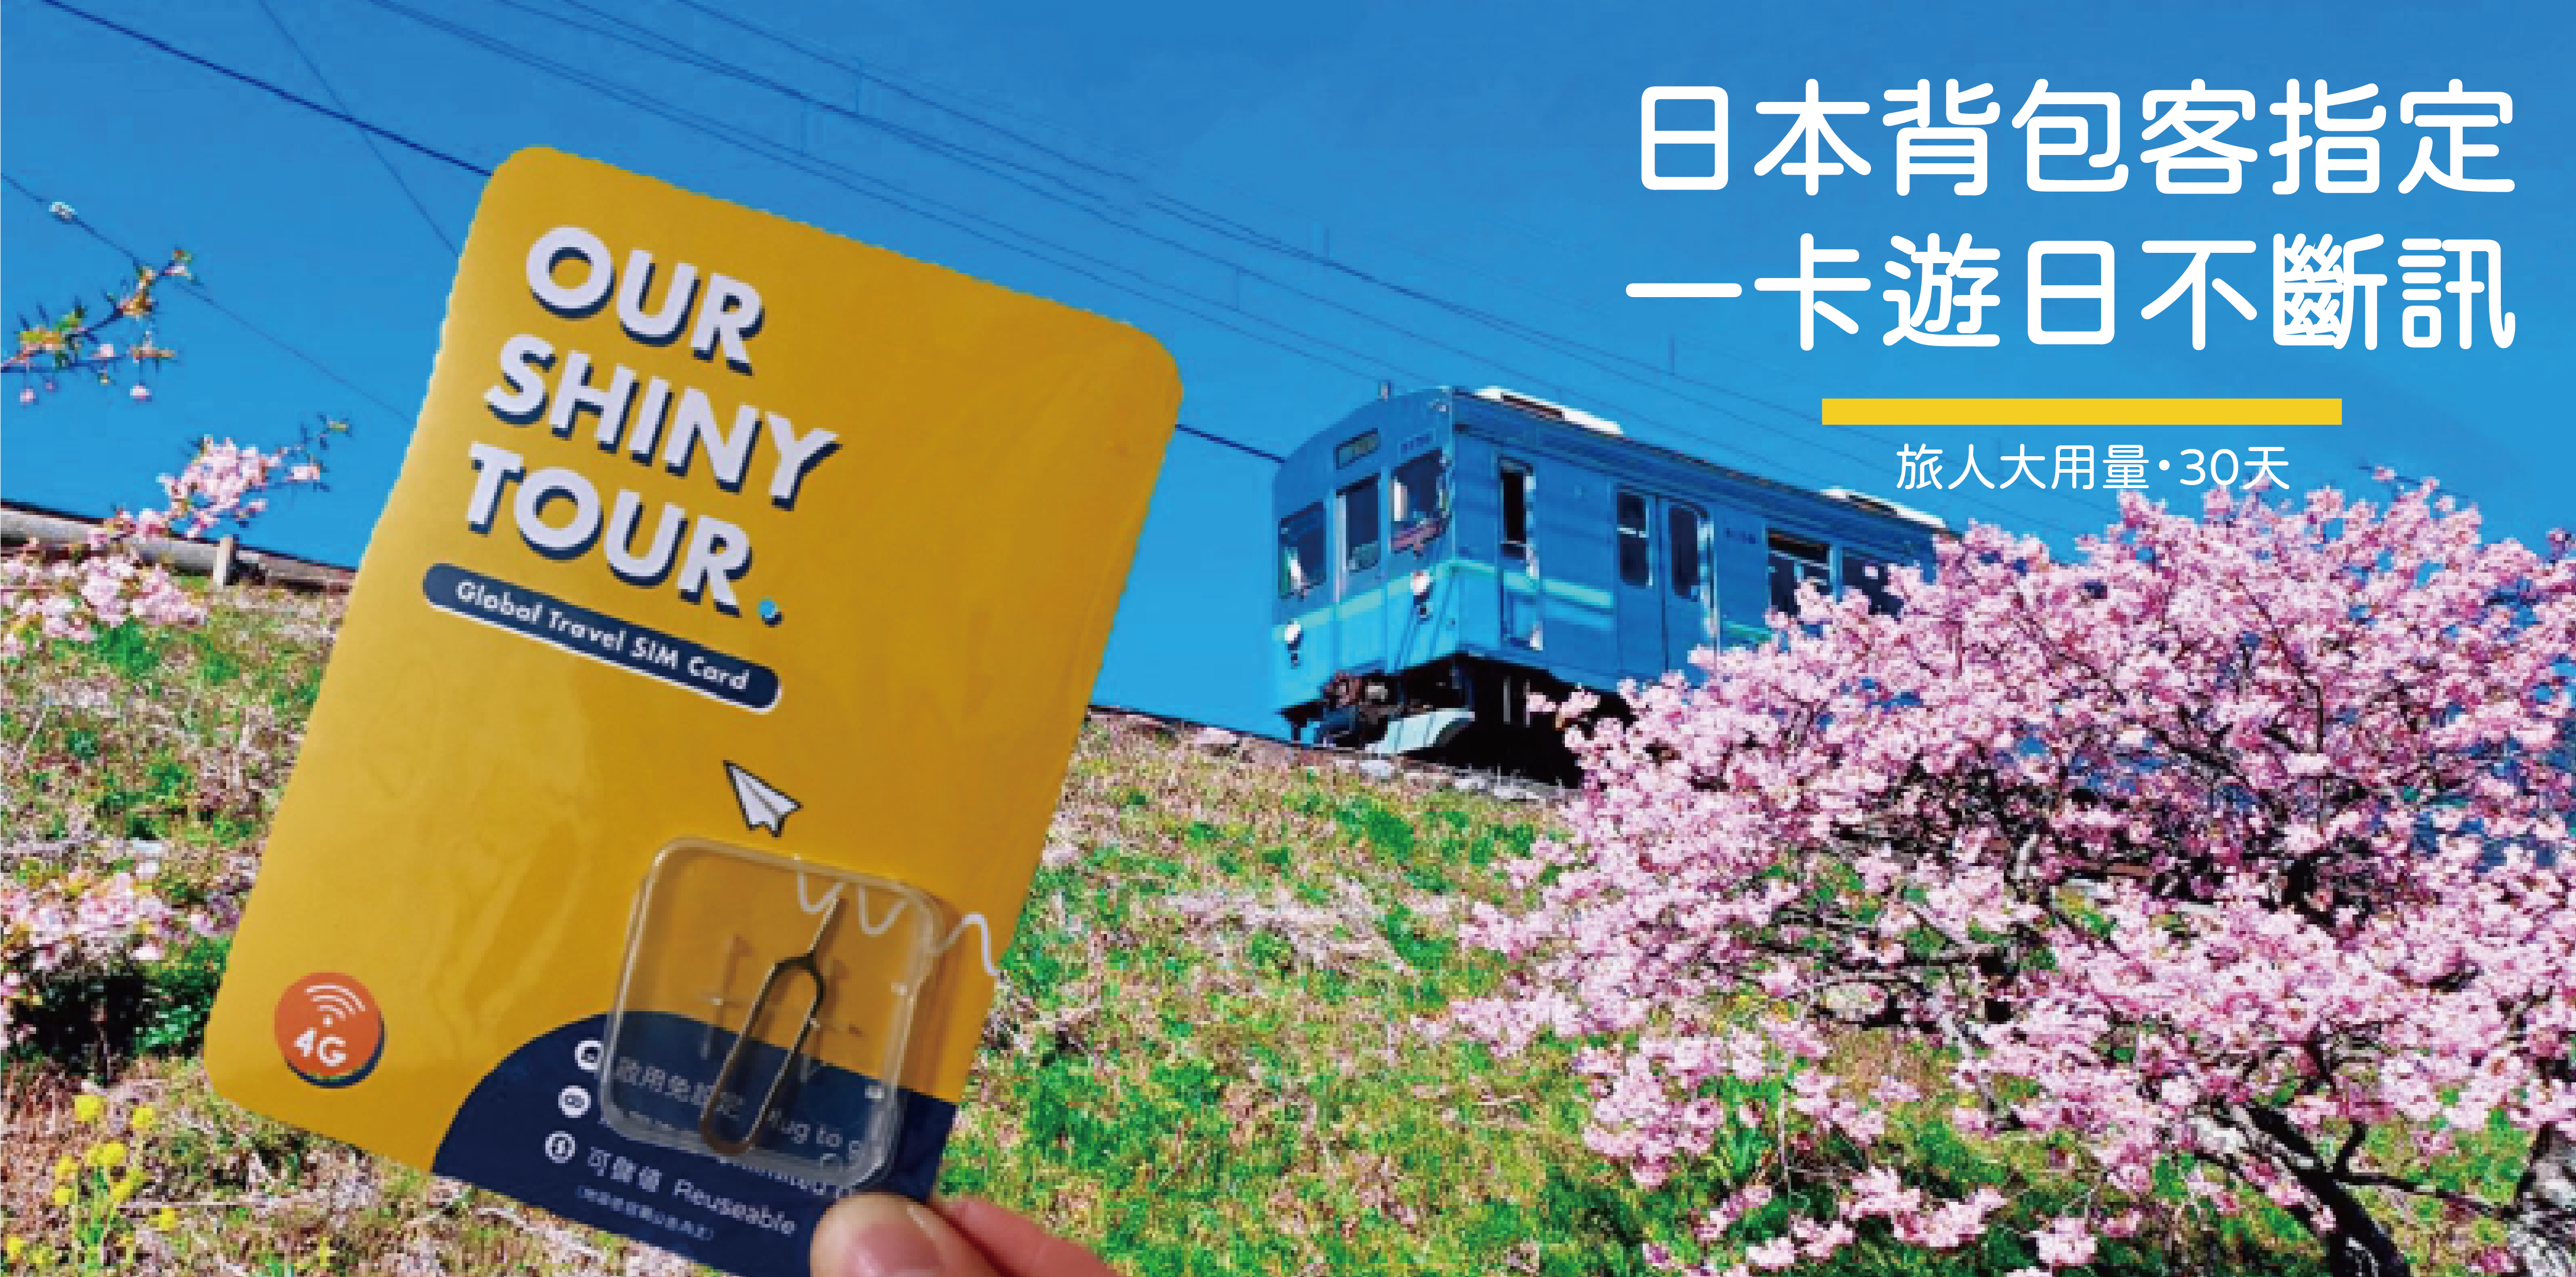 OUR SHINY TOUR 全球 上網卡 | 日本sim卡推薦